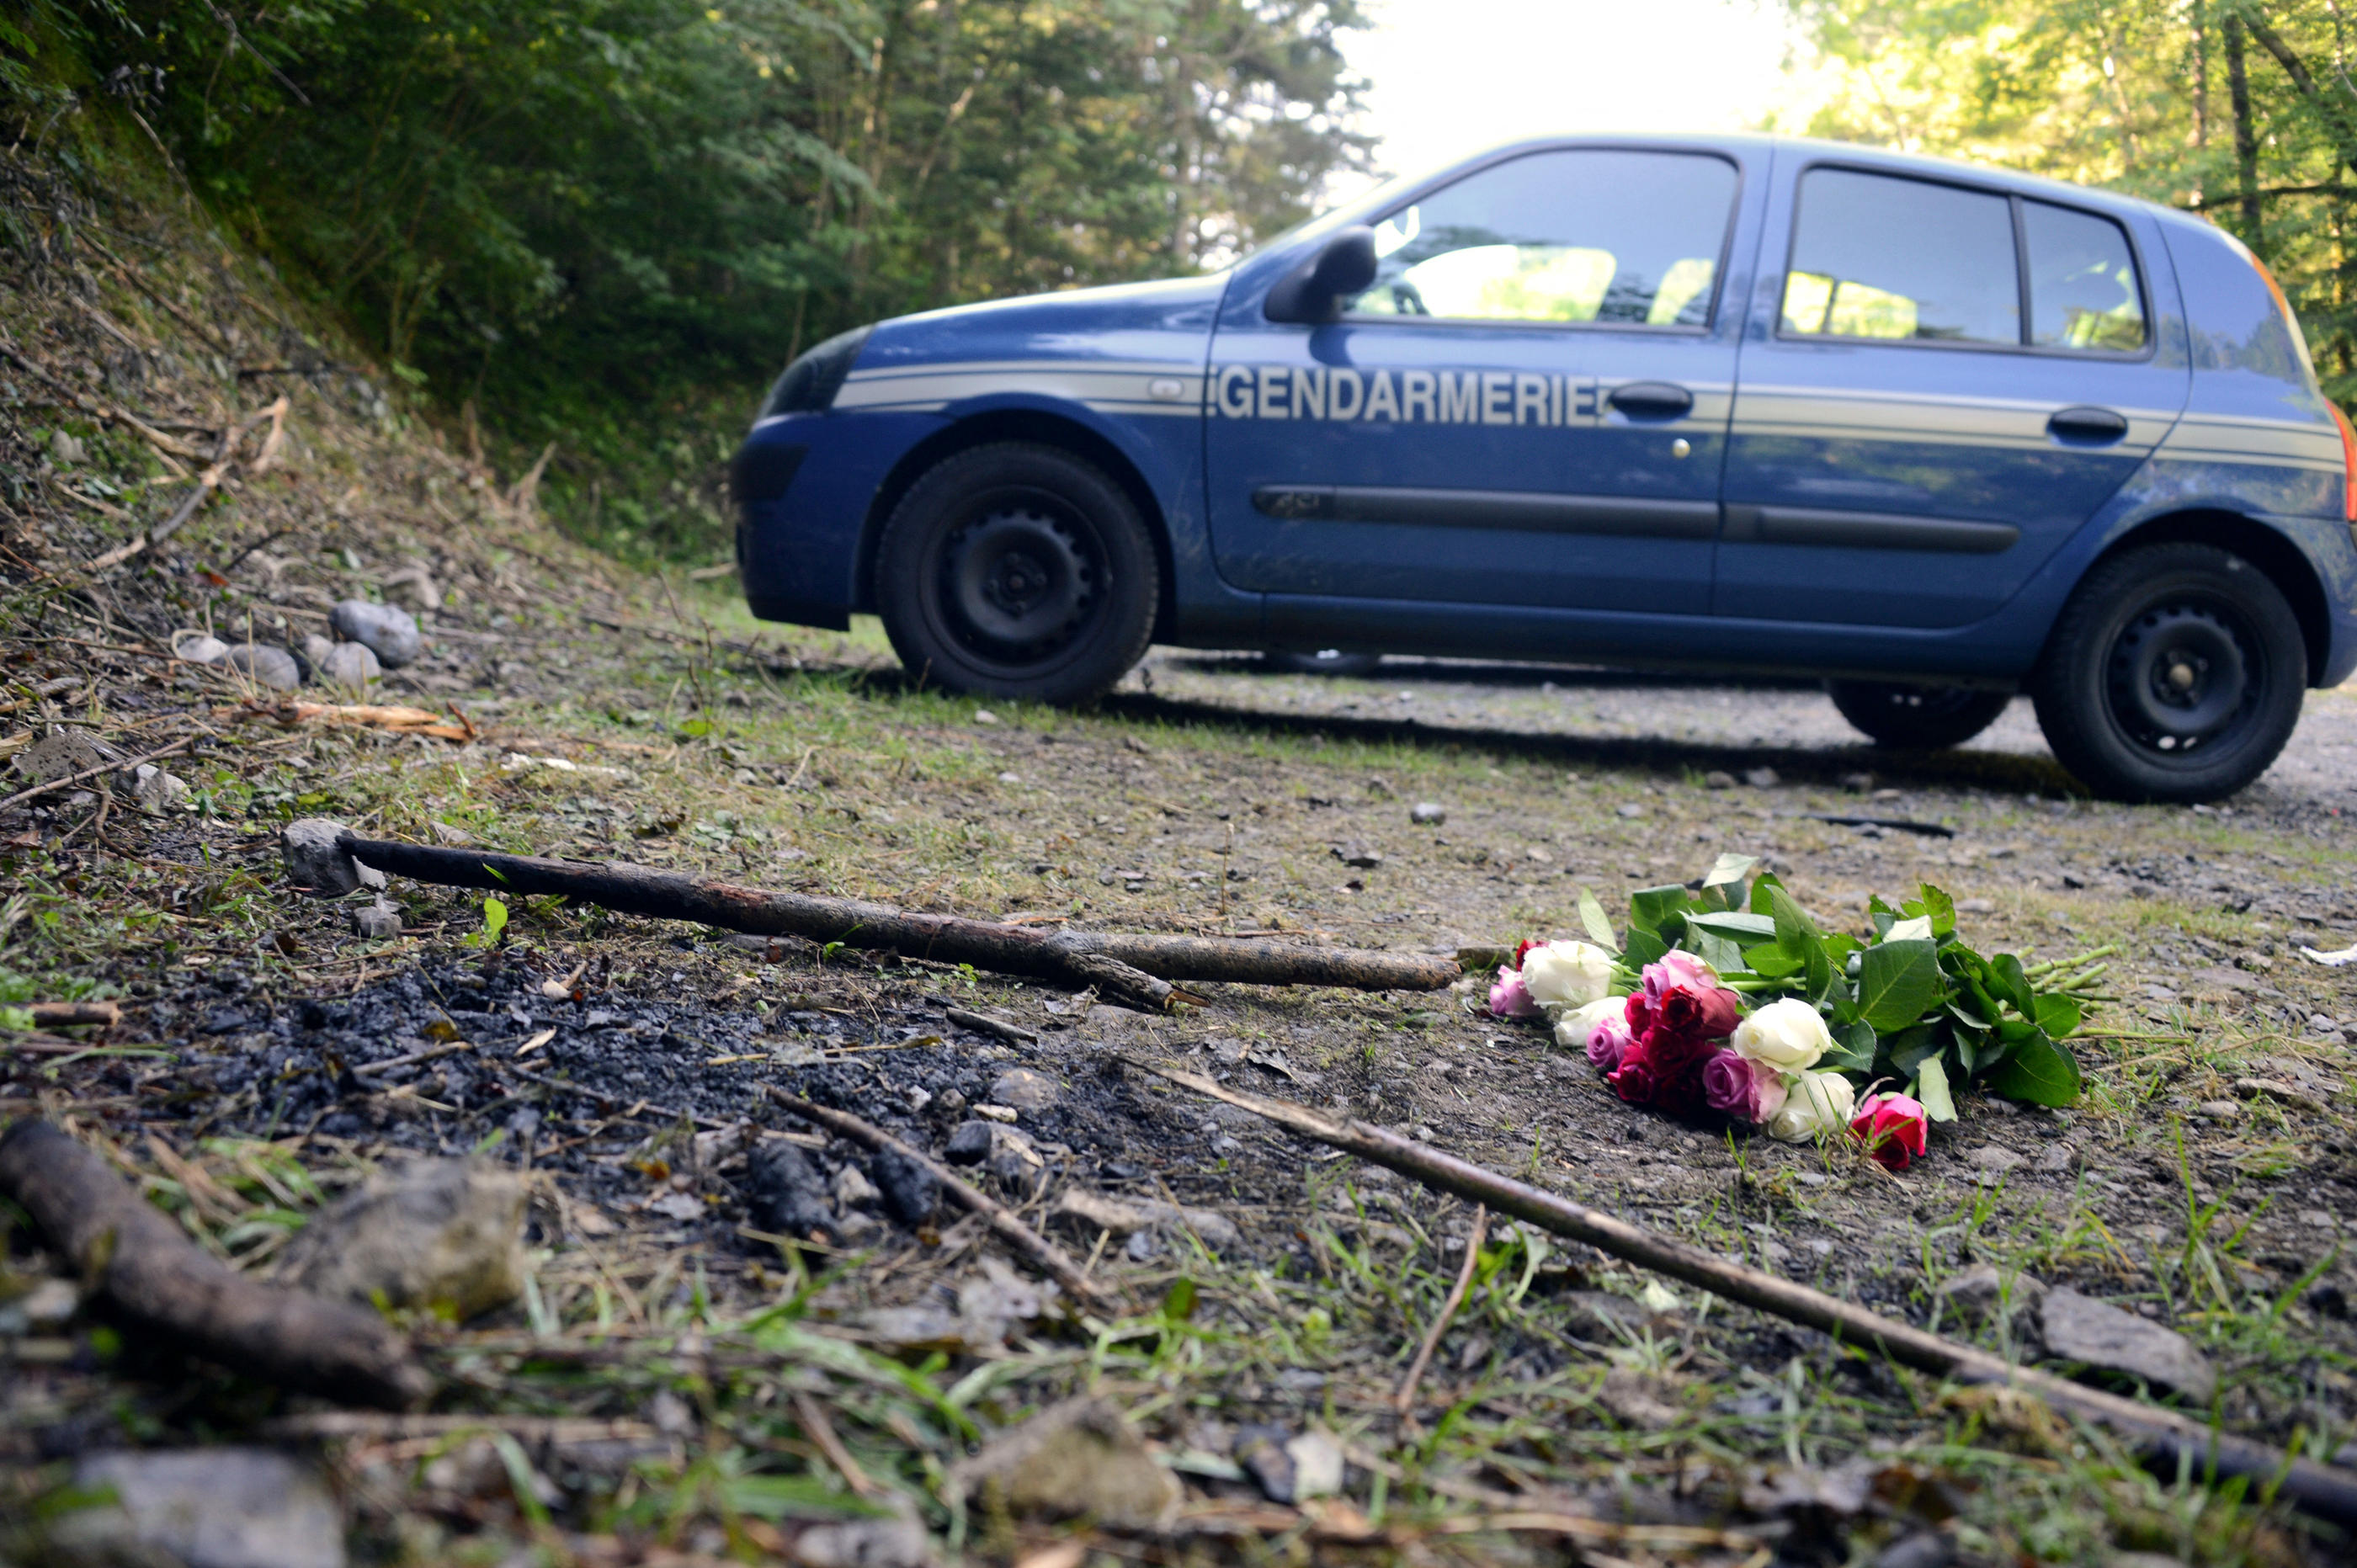 Le 5 septembre 2012, trois membres de la famille Al-Hilli, des Britanniques d’origine irakienne en vacances en Haute-Savoie, et un cycliste français de la région avaient été abattus sur un parking de la route forestière de la Combe d’Ire. AFP/Philippe Desmazes